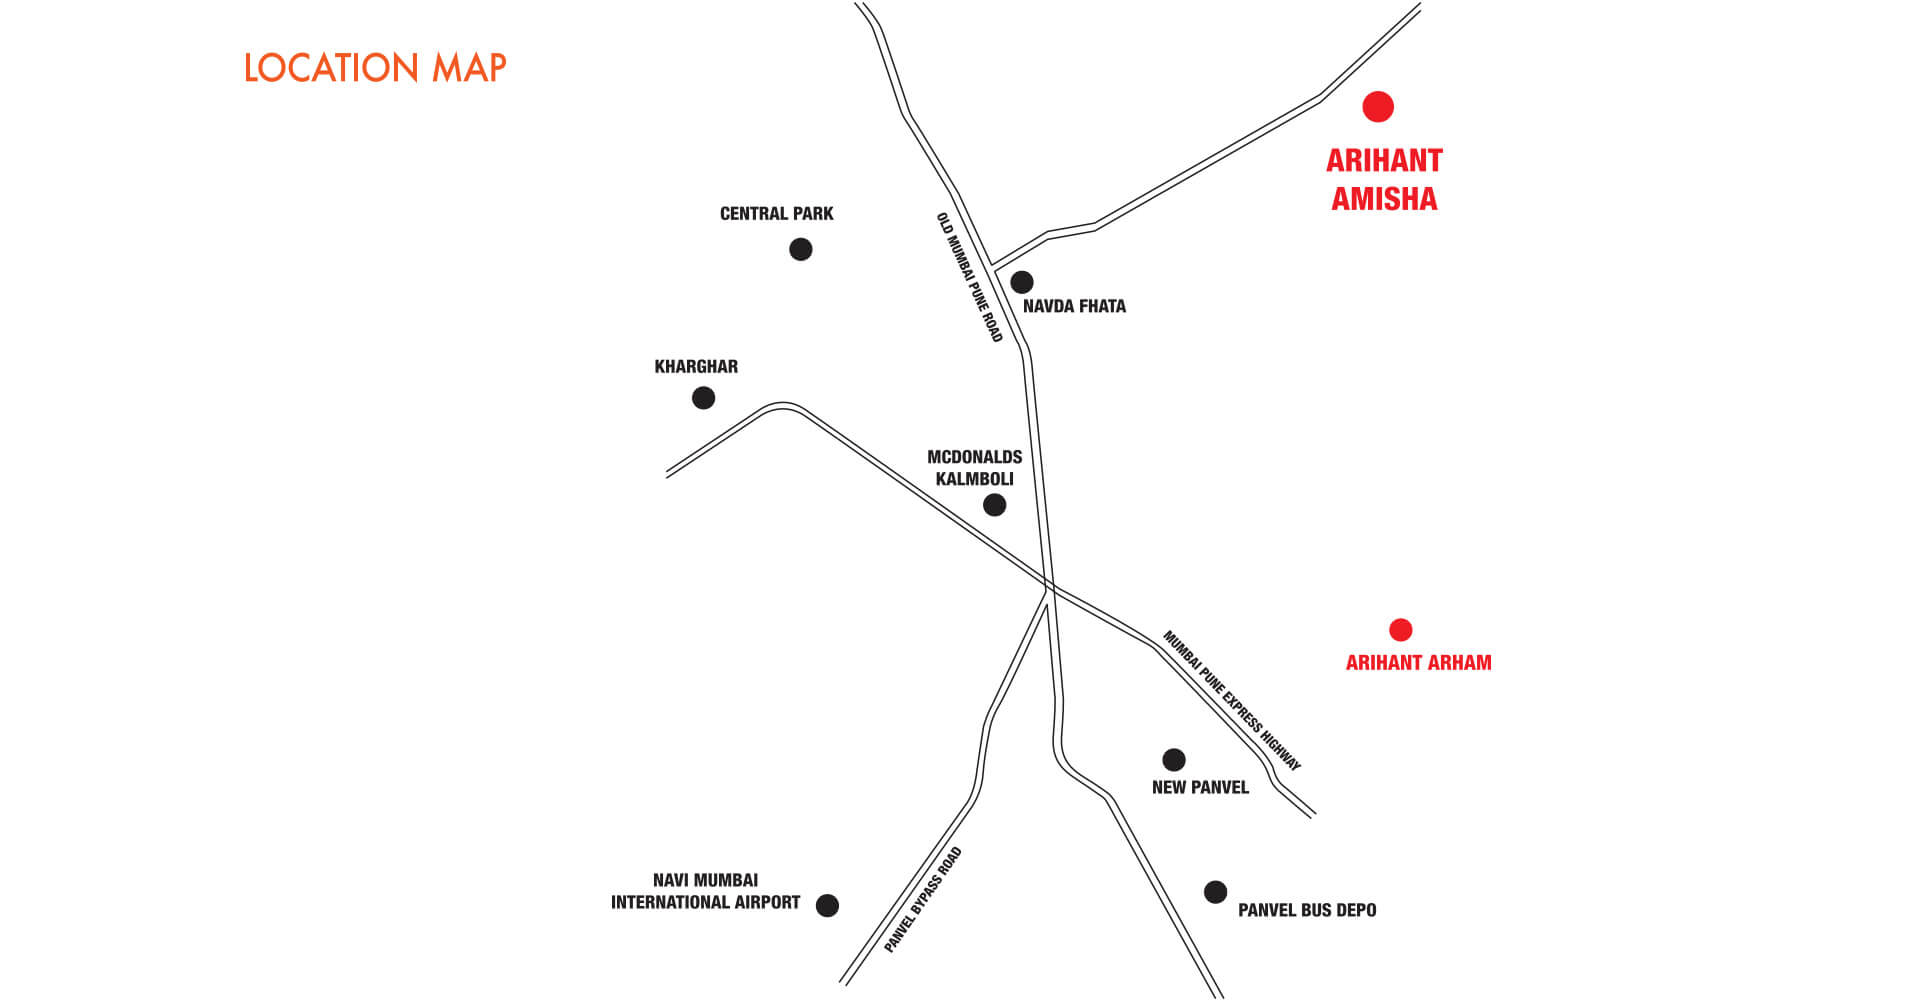 Arihant Amisha Location Map